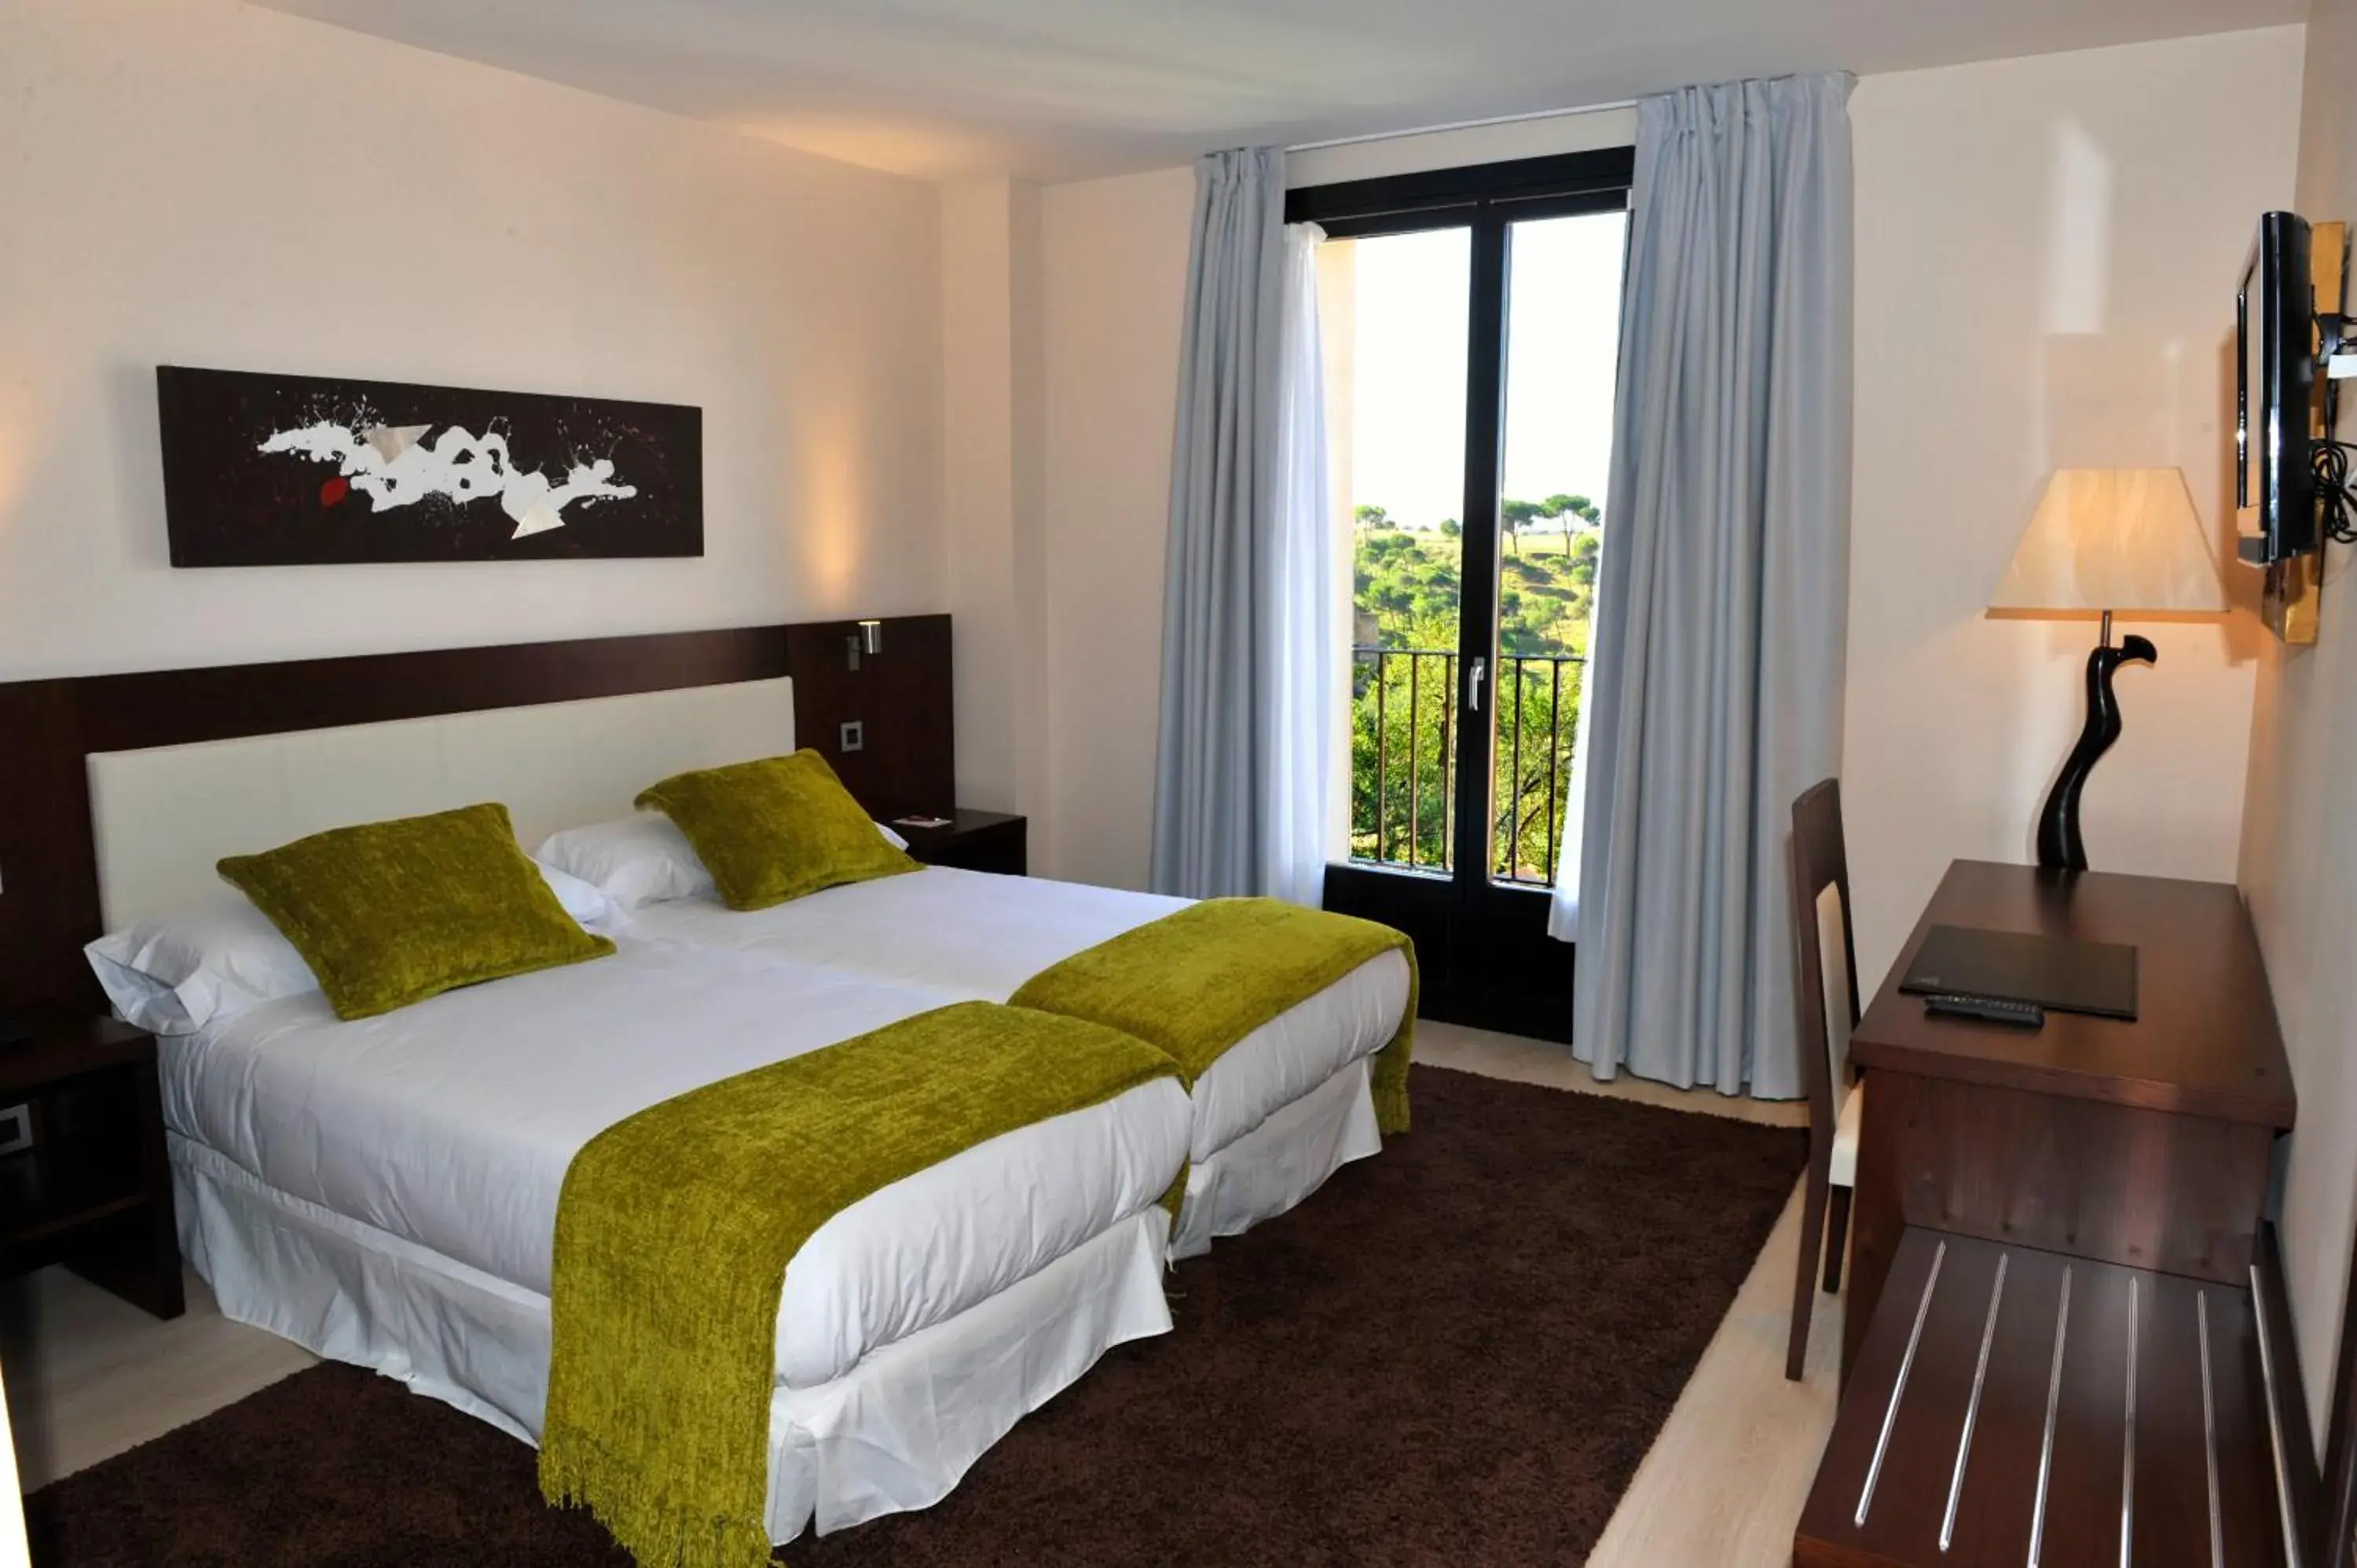 Bed, Room Photo in Hotel Don Felipe